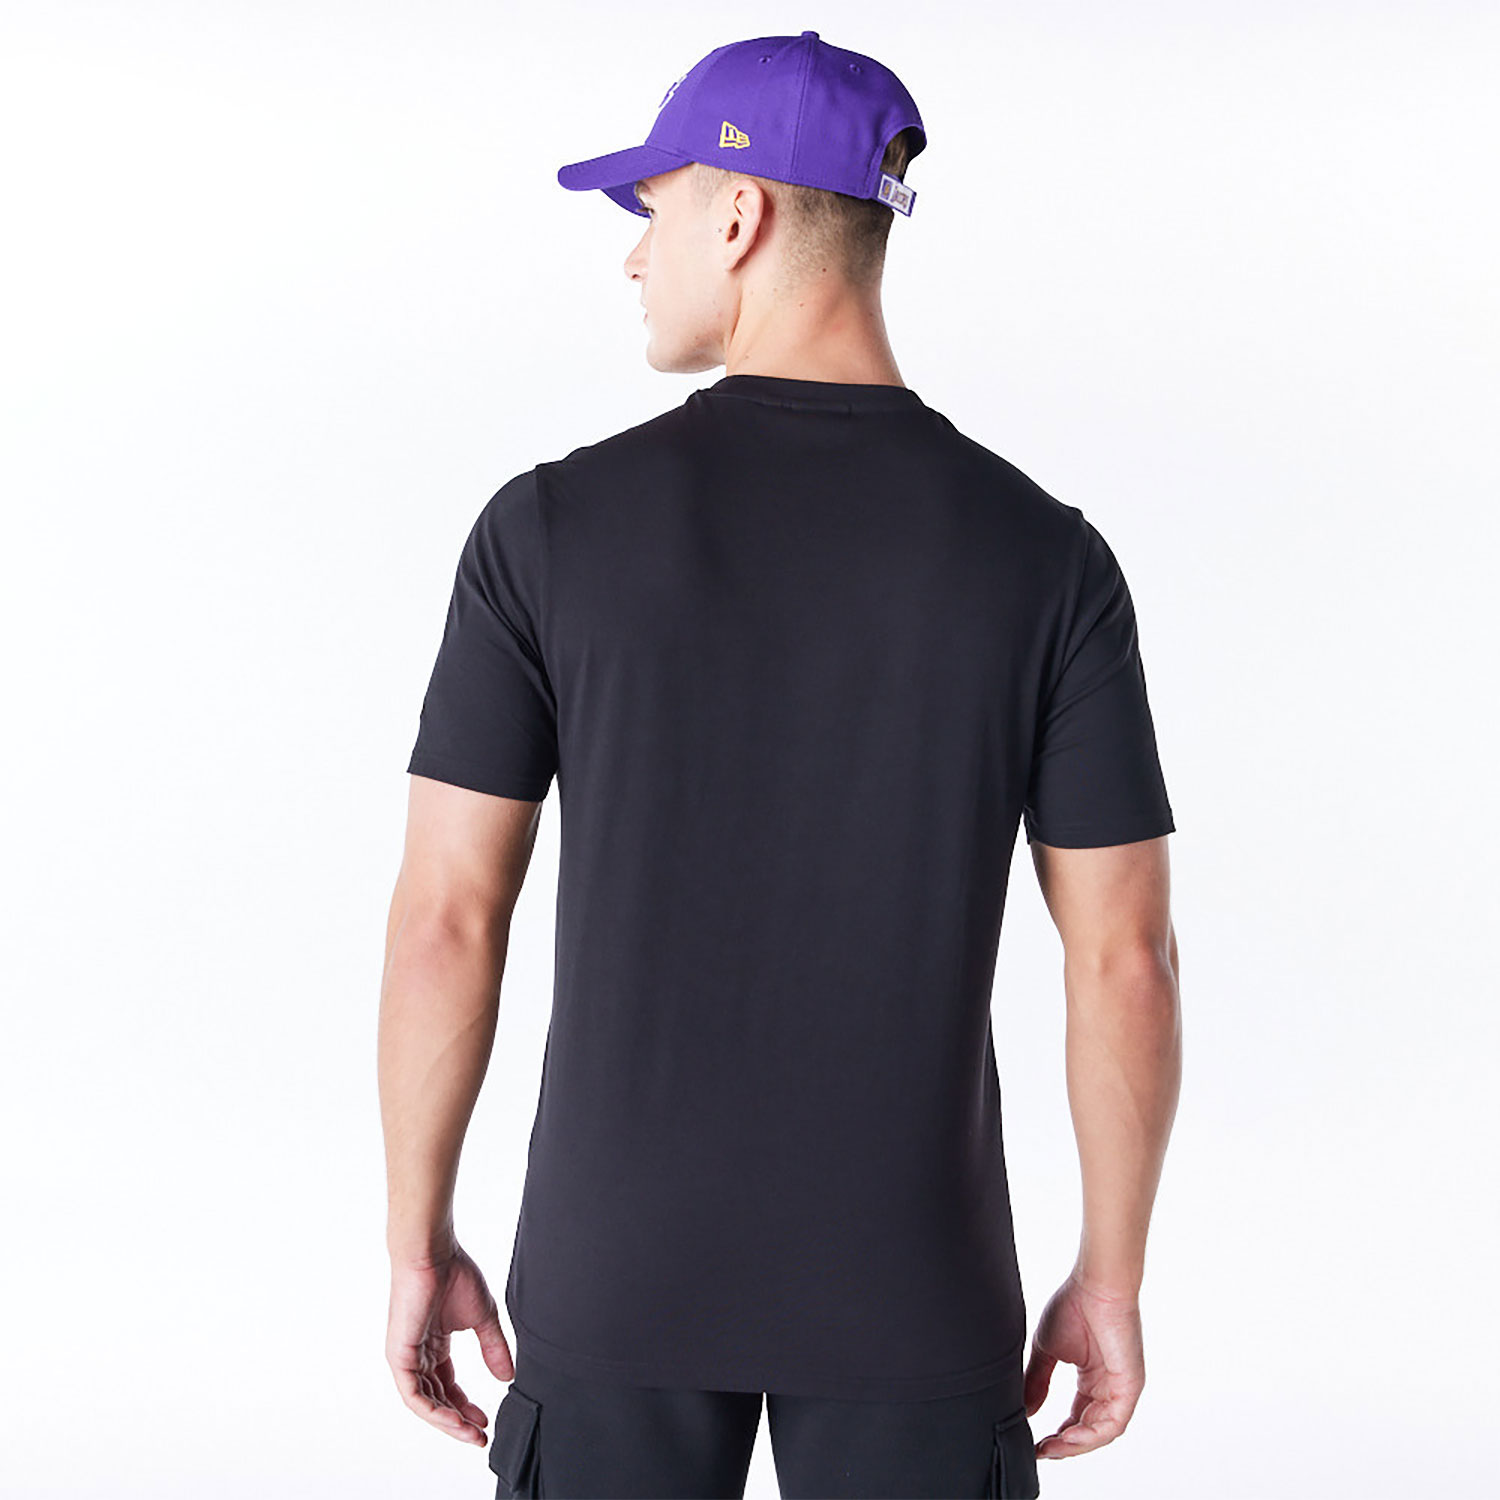 LA Lakers NBA Graphic Black T-Shirt